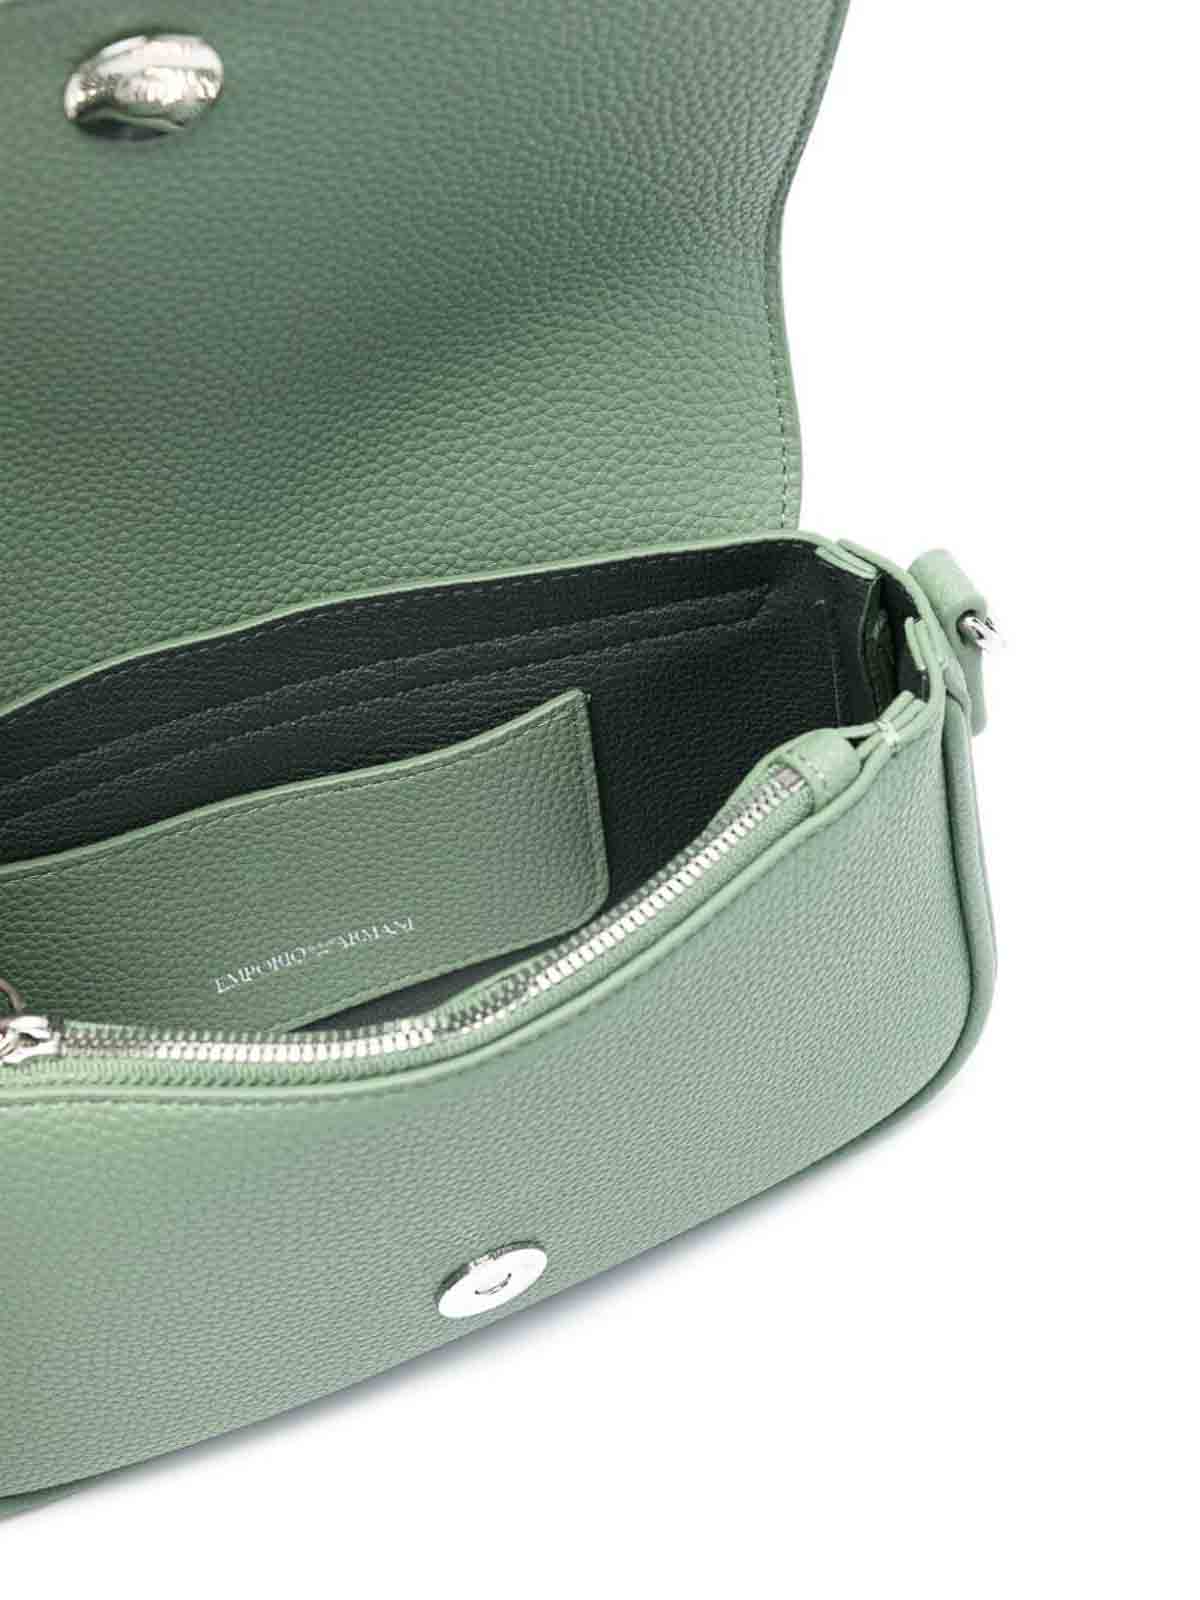 Shop Emporio Armani Crossbody Bag In Green